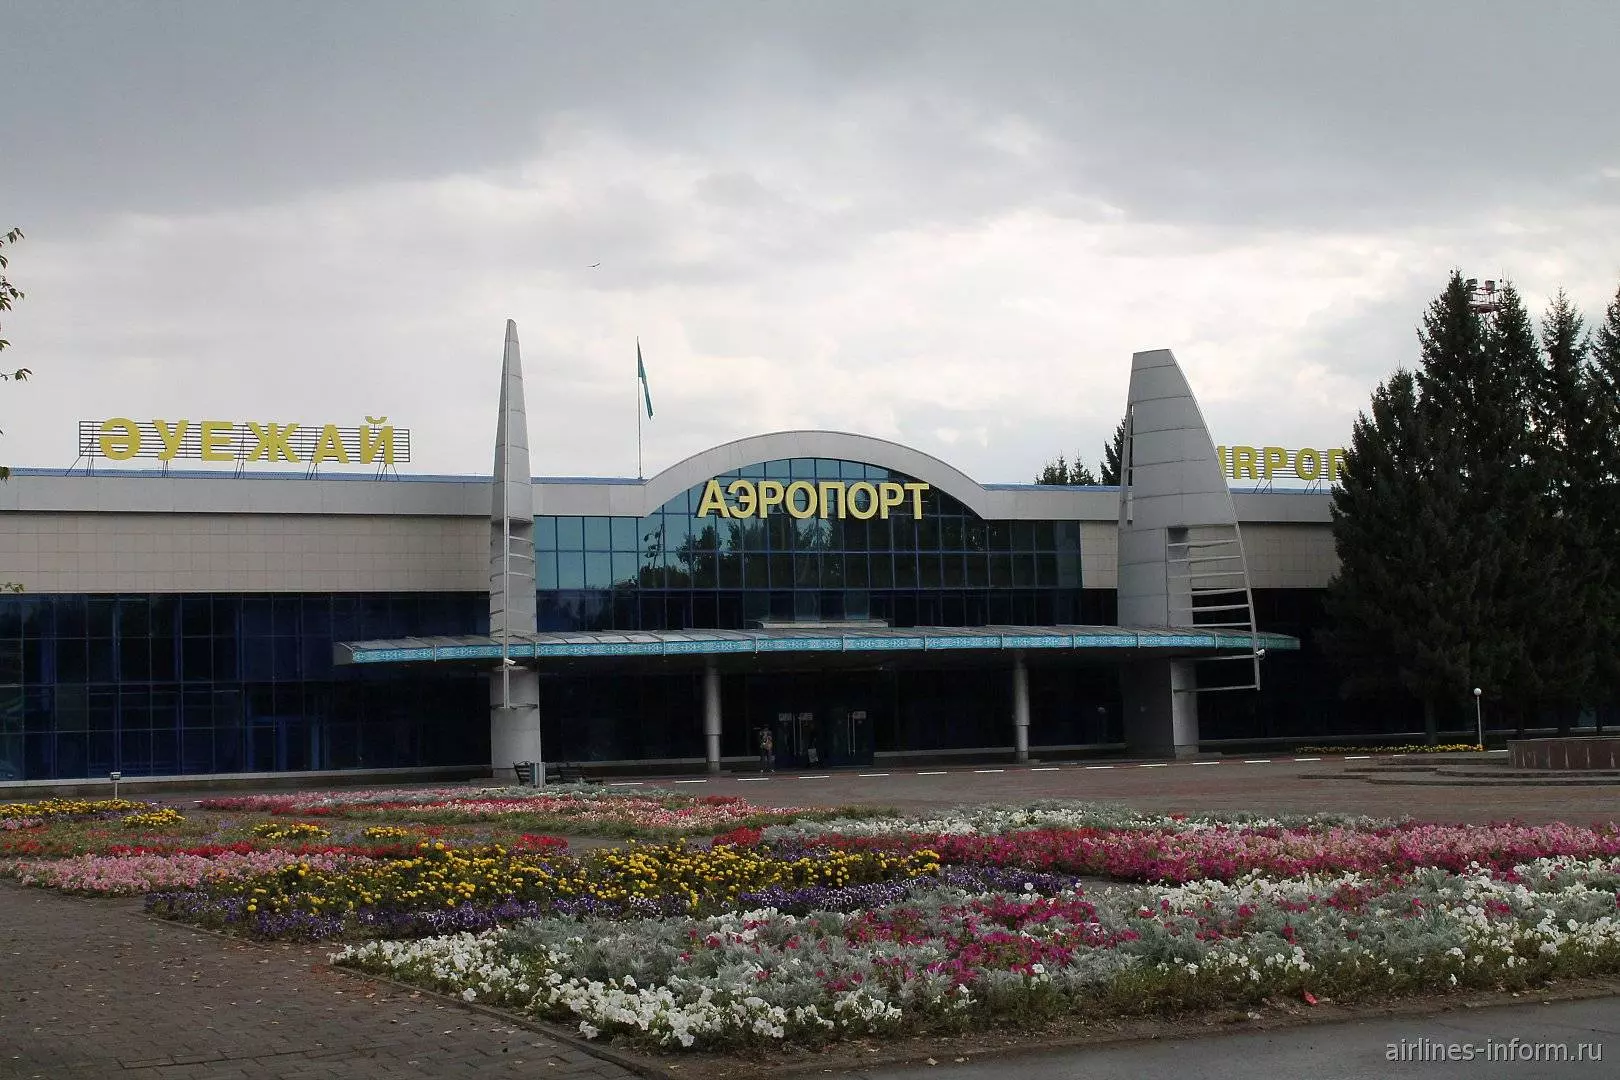 Аэропорт усть-каменогорска: официальный сайт